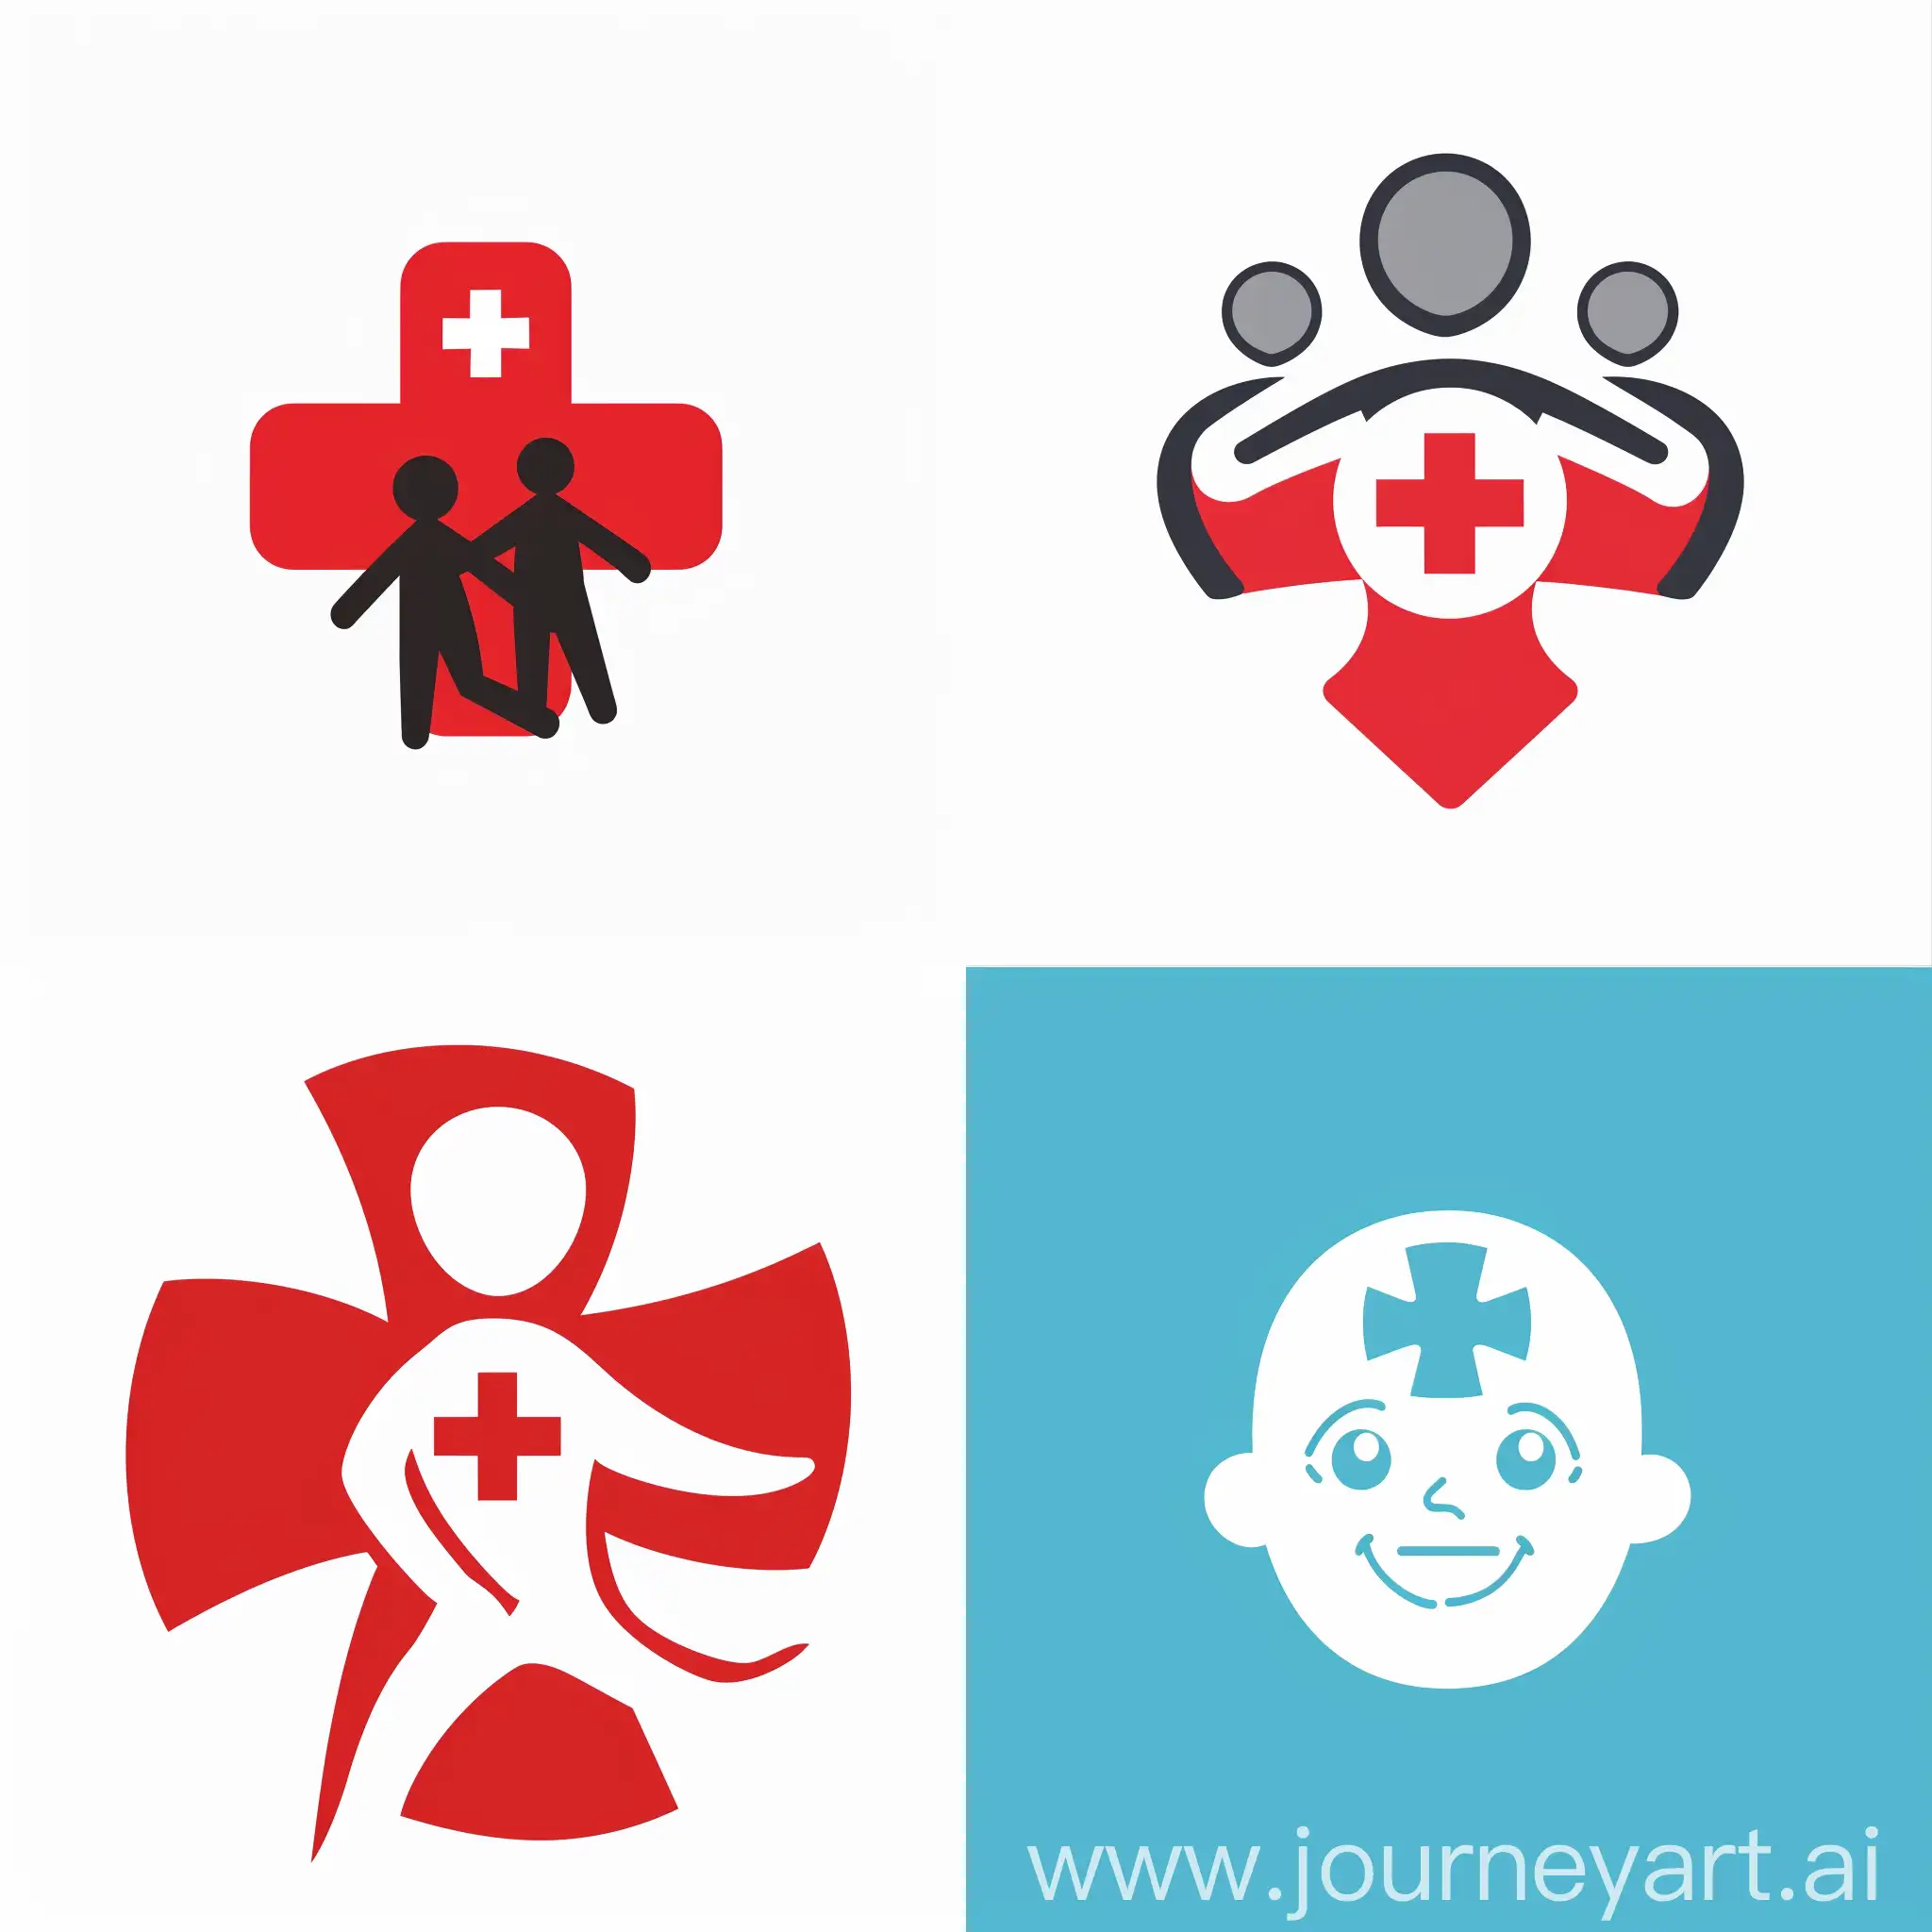 请帮我们的爱心项目设计一个logo，具体内容是给偏远地区的小朋友进行应急救护知识及技能培训教育